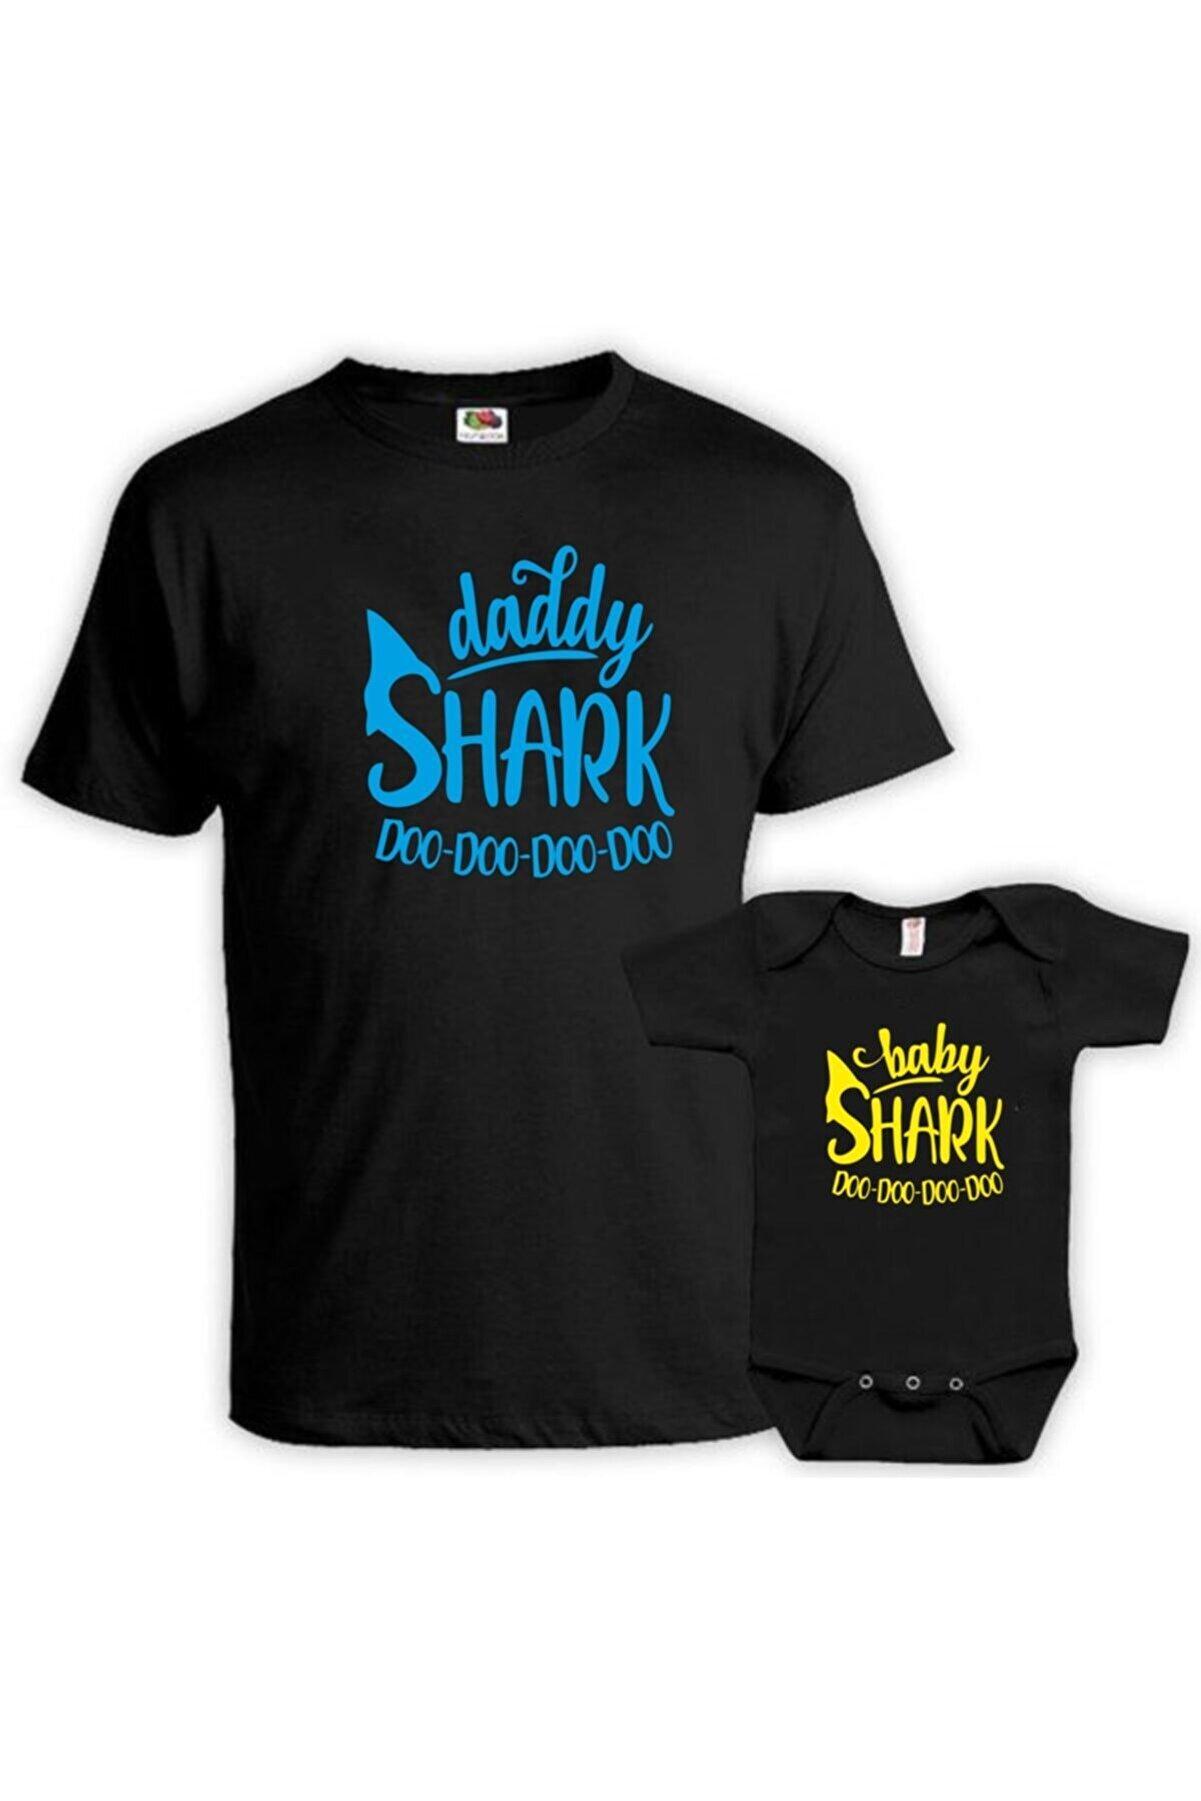 Daddy Baby Shark Baba Oğul Kız Tişört Zıbın Kombini